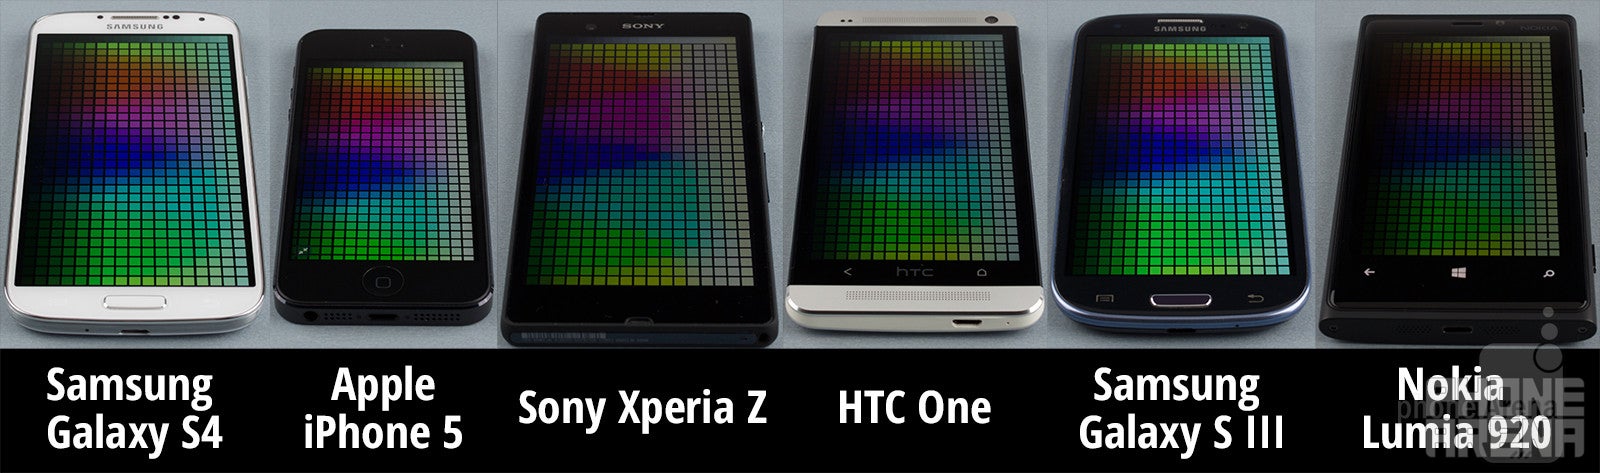 Screen Comparison: Galaxy S4 vs iPhone 5 vs Xperia Z vs One vs Galaxy S III vs Lumia 920